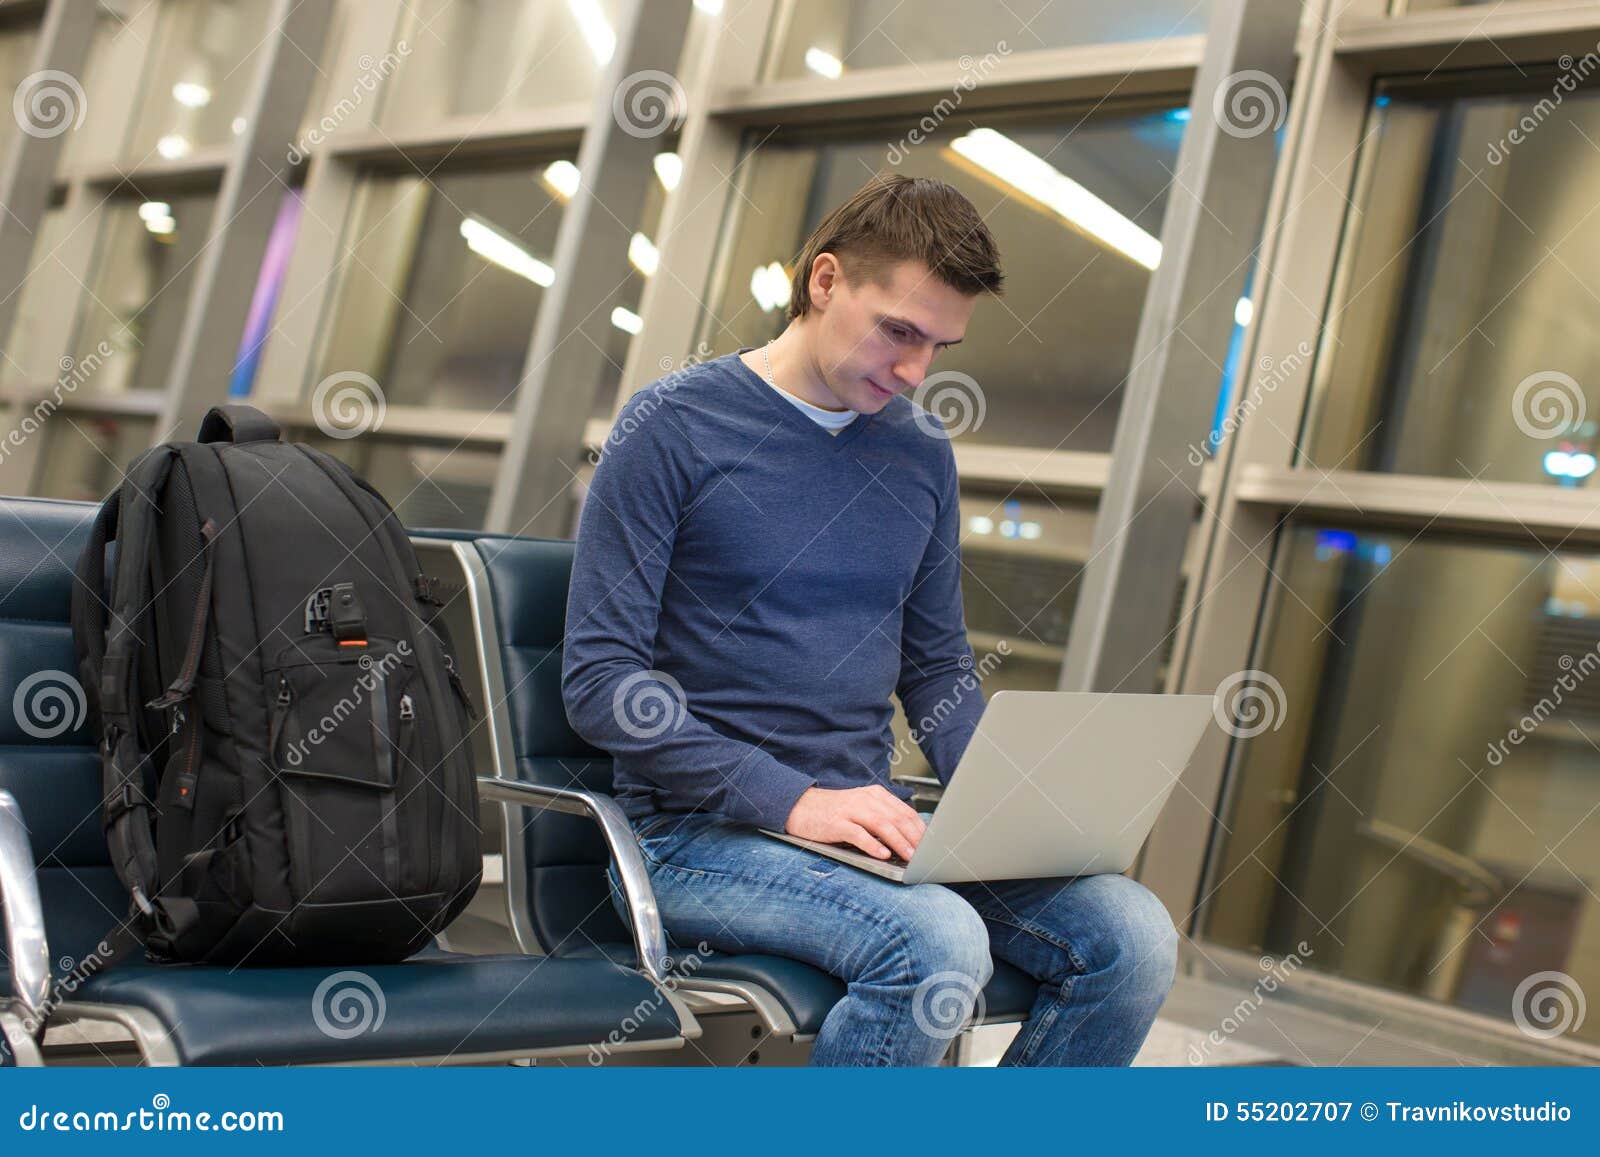 Пребывать за границей. Бизнесмен в аэропорту. Мужчина в аэропорту. Мужчина сидит в аэропорту. Люди сидят в аэропорту.